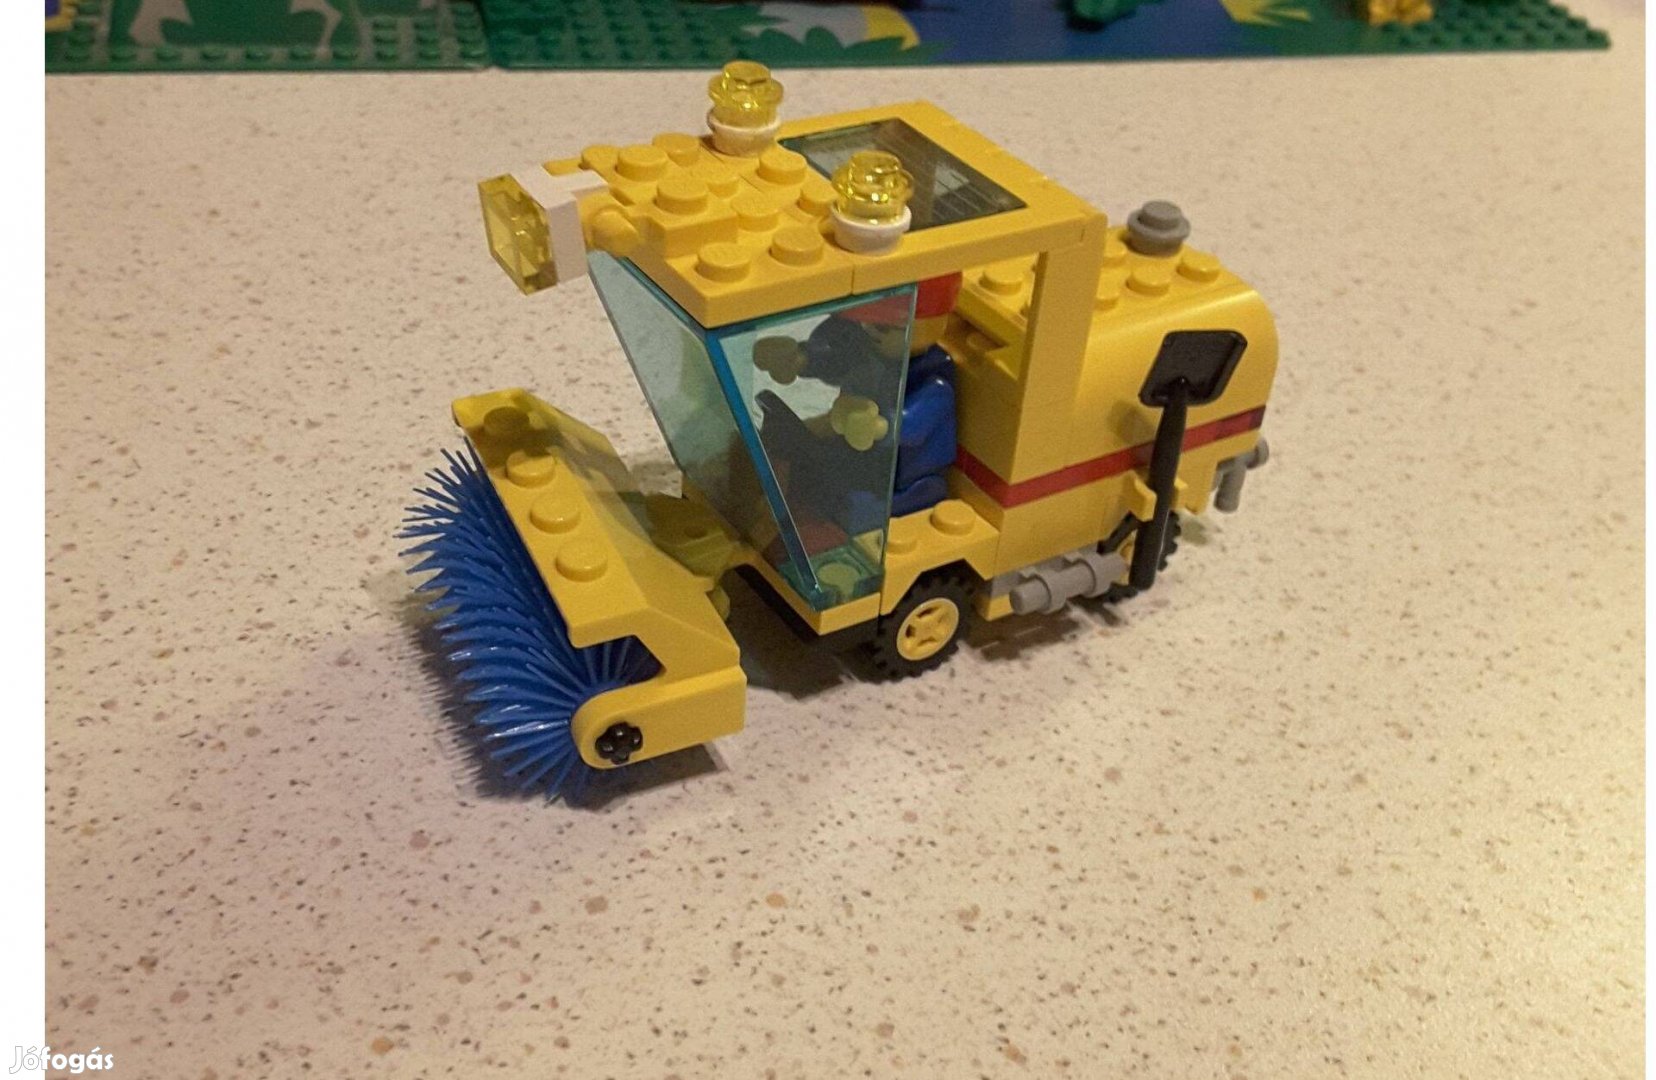 Lego 6649 Utcasöprő / utca takarító autó / Street sweeper